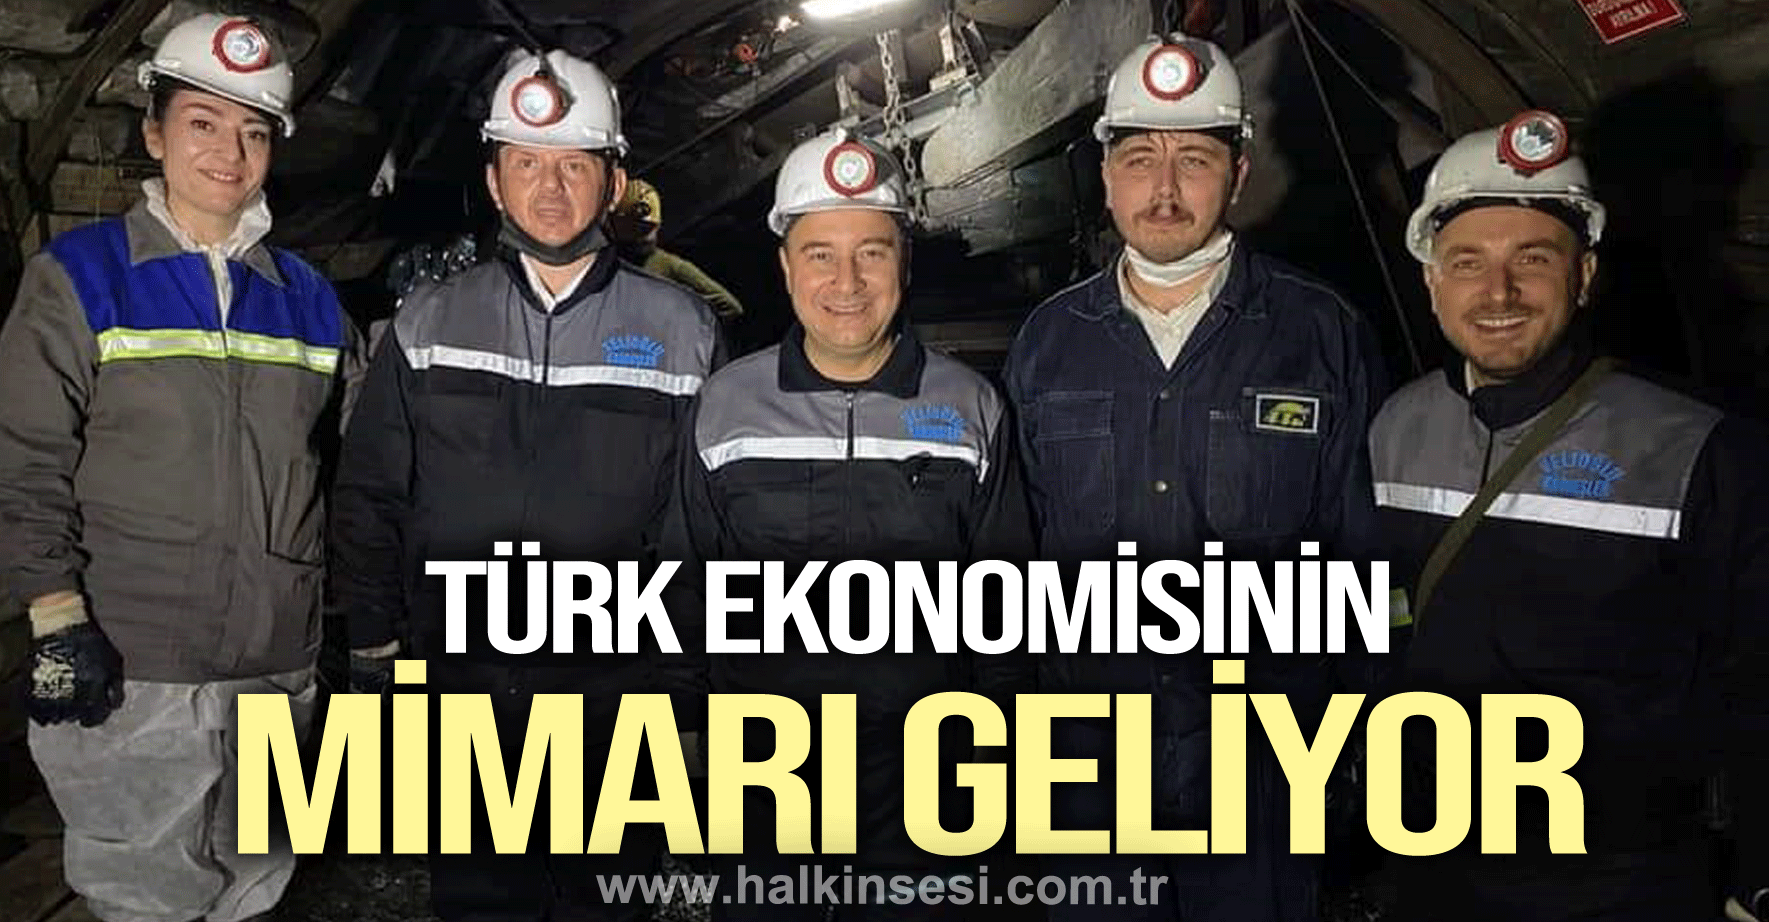 Keleş; “Türk ekonomisinin mimarı geliyor”